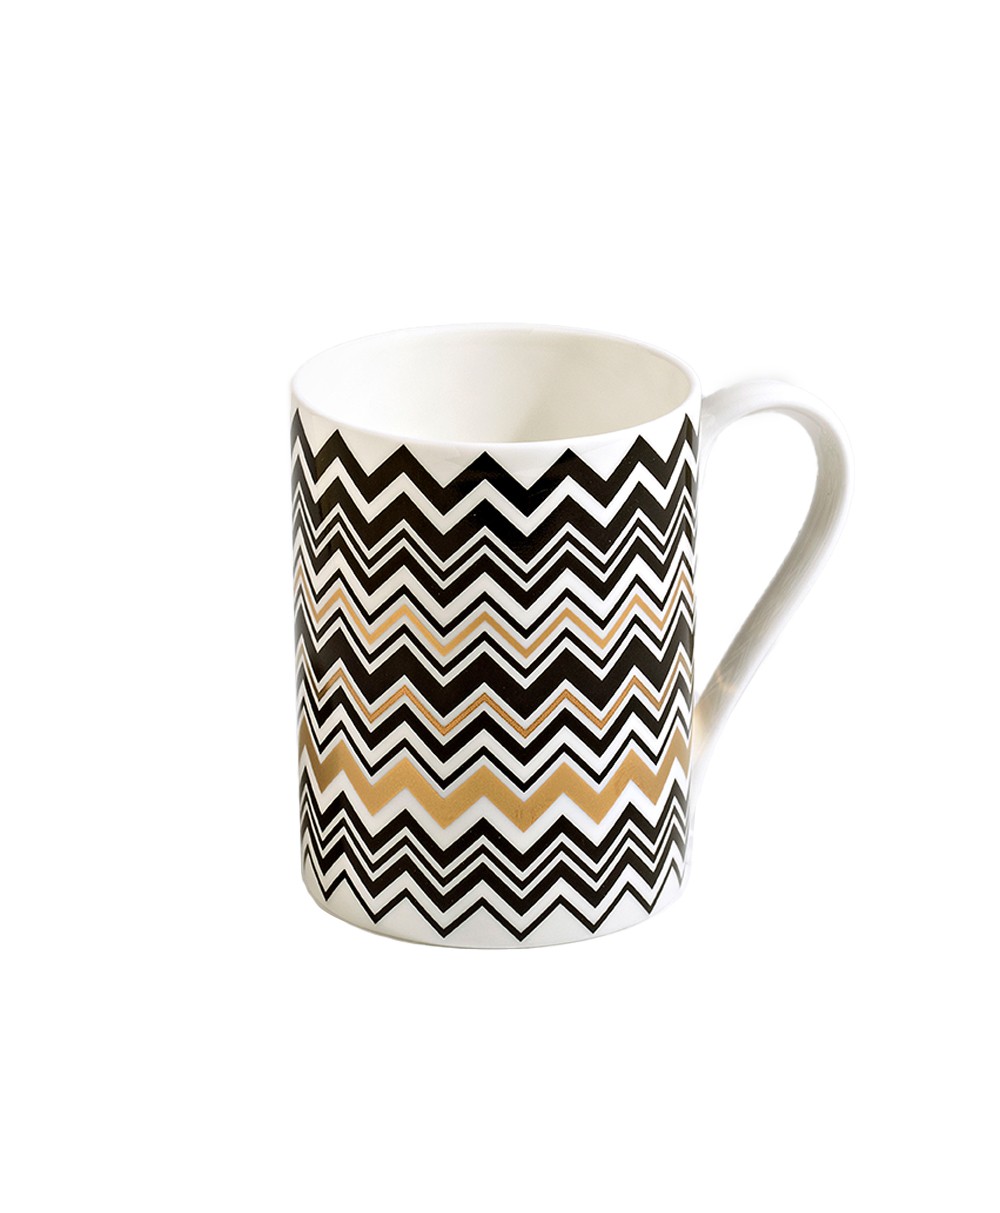 Produktbild der Kaffee Tasse Zig Zag in der Farbe Gold von Missoni - RAUM concept store